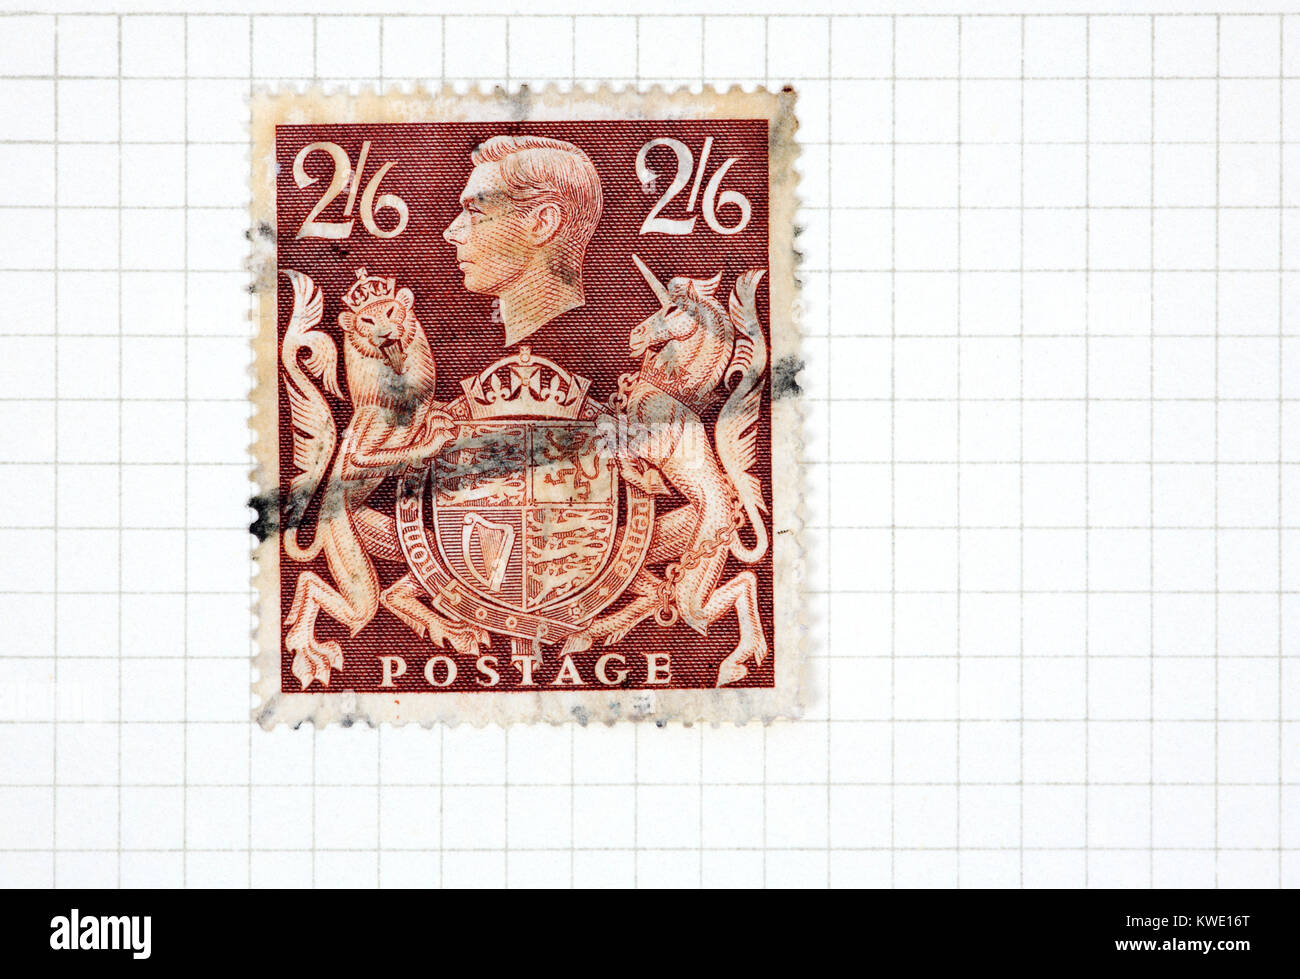 A utilisé le roi George VI 2s 6d brown stamp de 1939-48 question à partir d'une collection de timbres britanniques. Banque D'Images